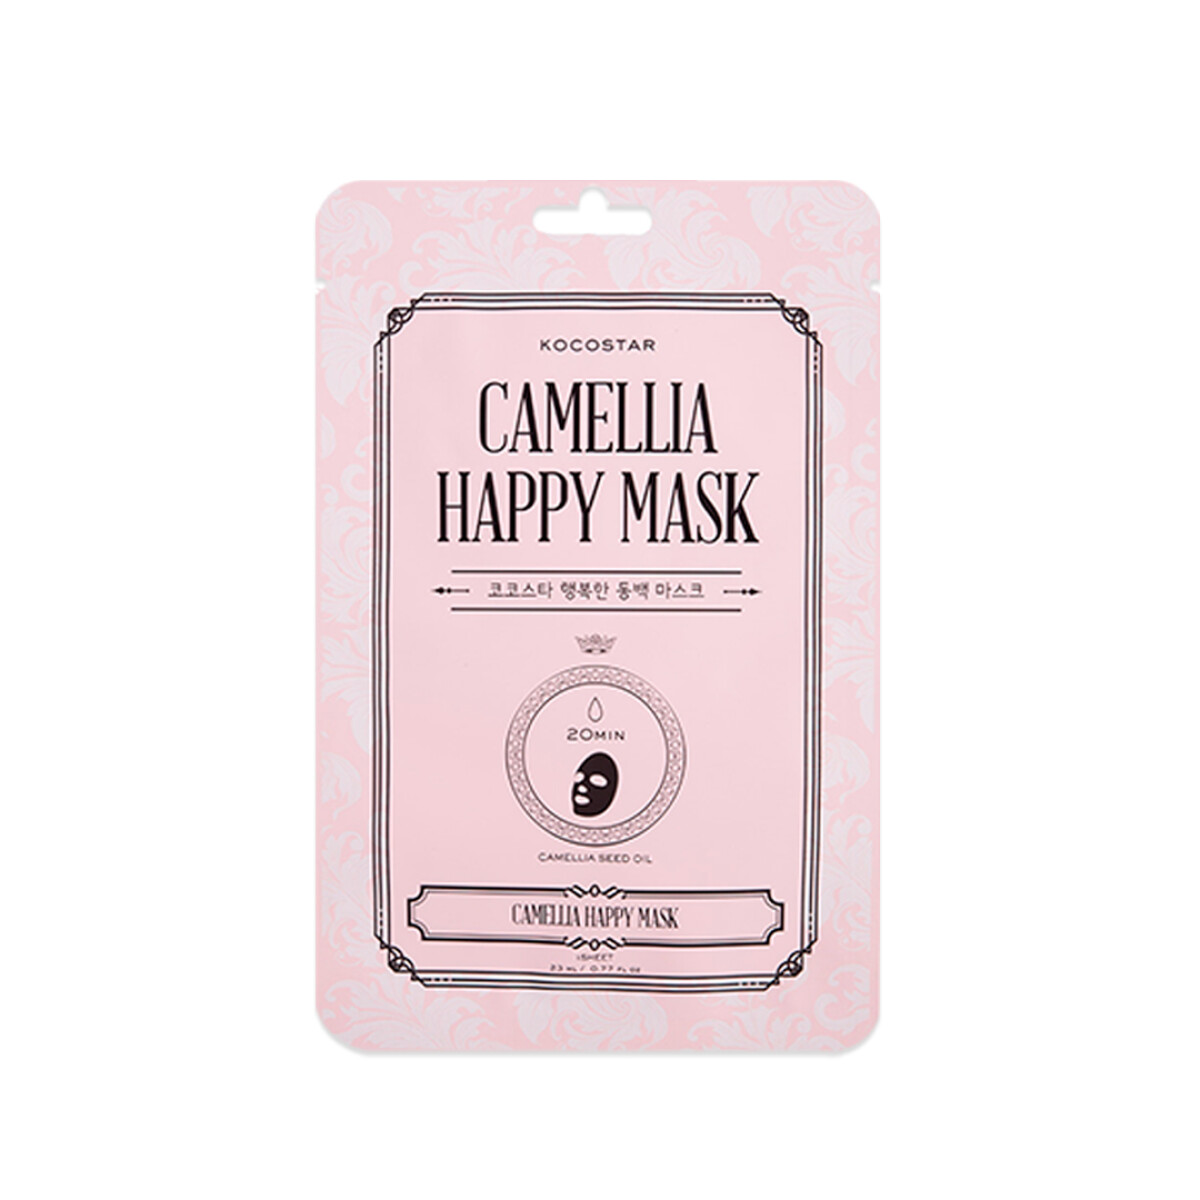 CAMELIA HAPPY MASK - Mascarilla facial - Hidratante y anti-age 